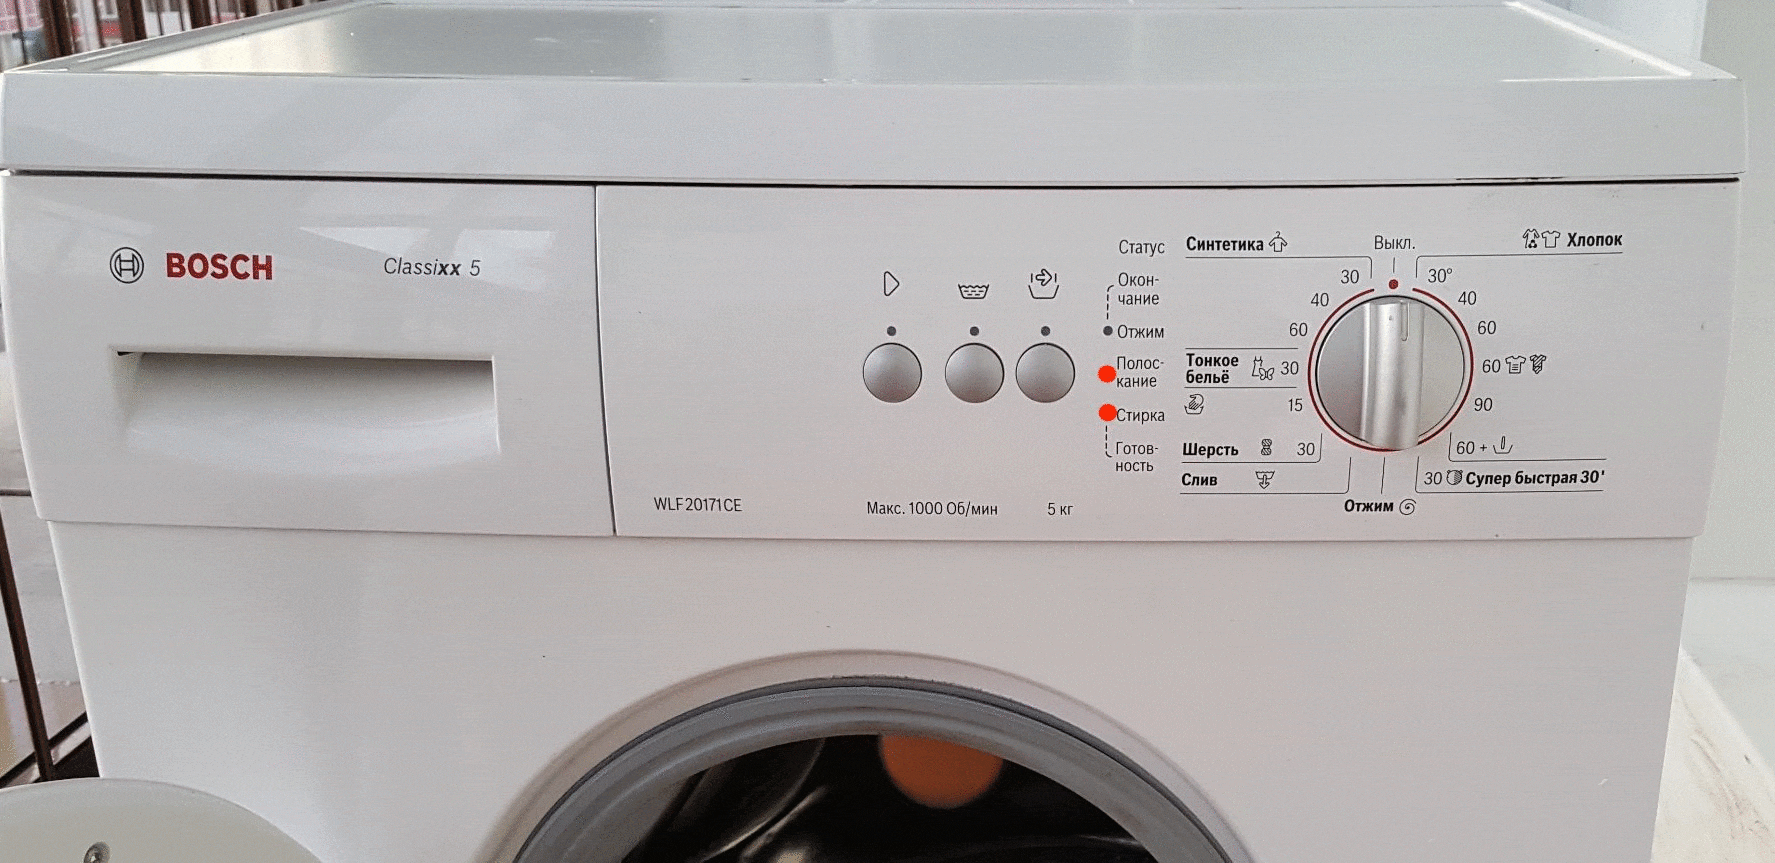 Ошибка f17 в стиральной машине bosch: что делать?